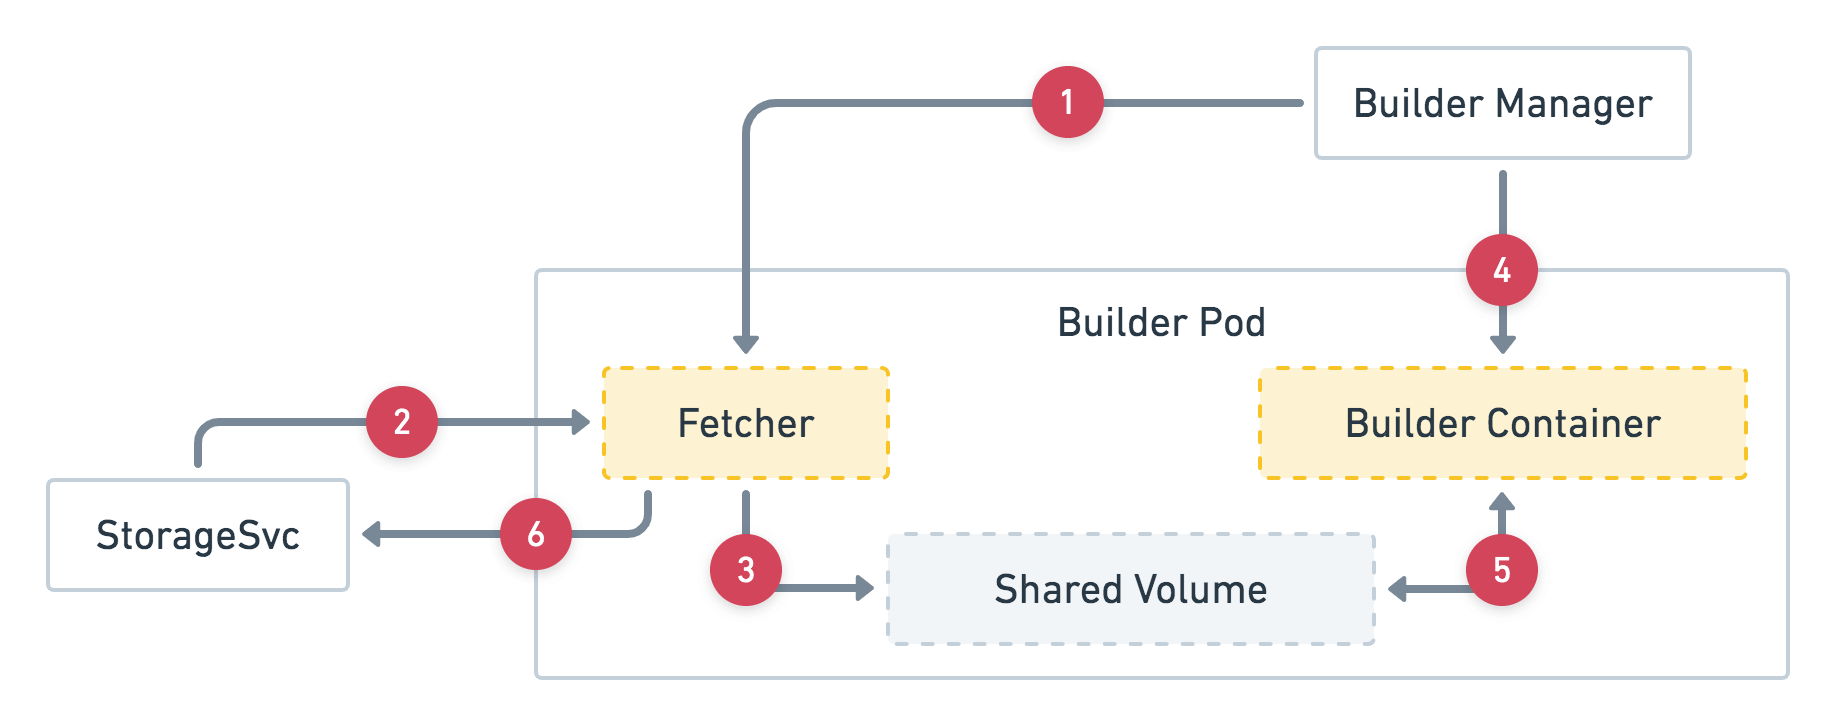 Fig.1 Builder Pod